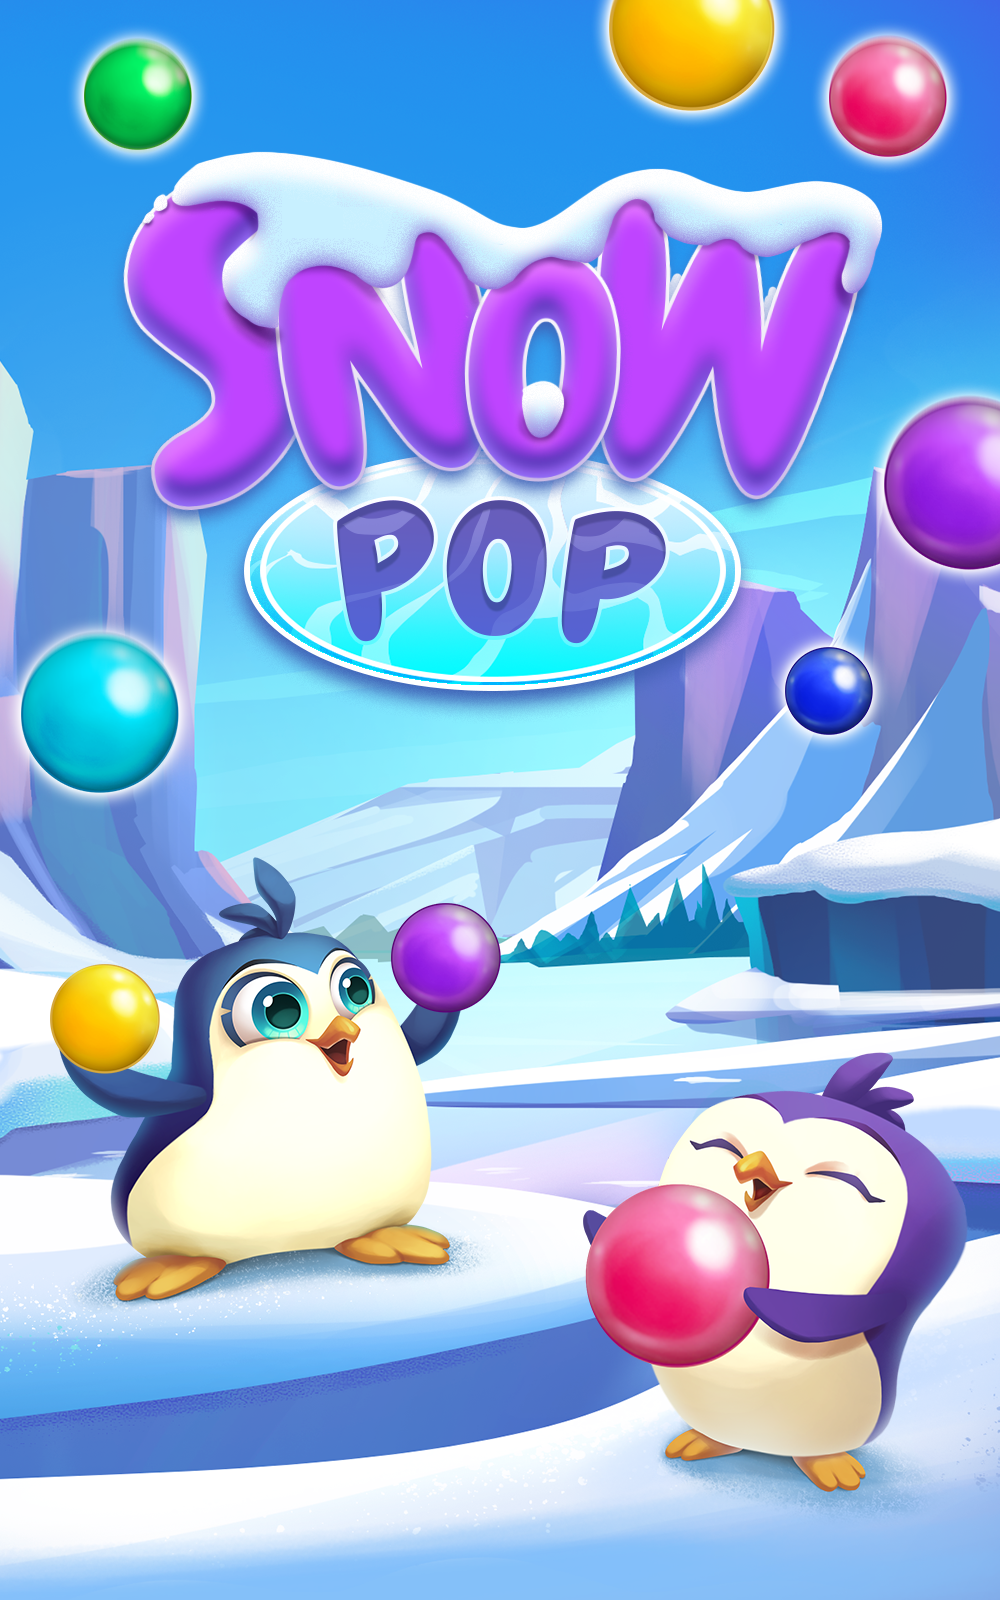 Snow Pop 게임 스크린 샷